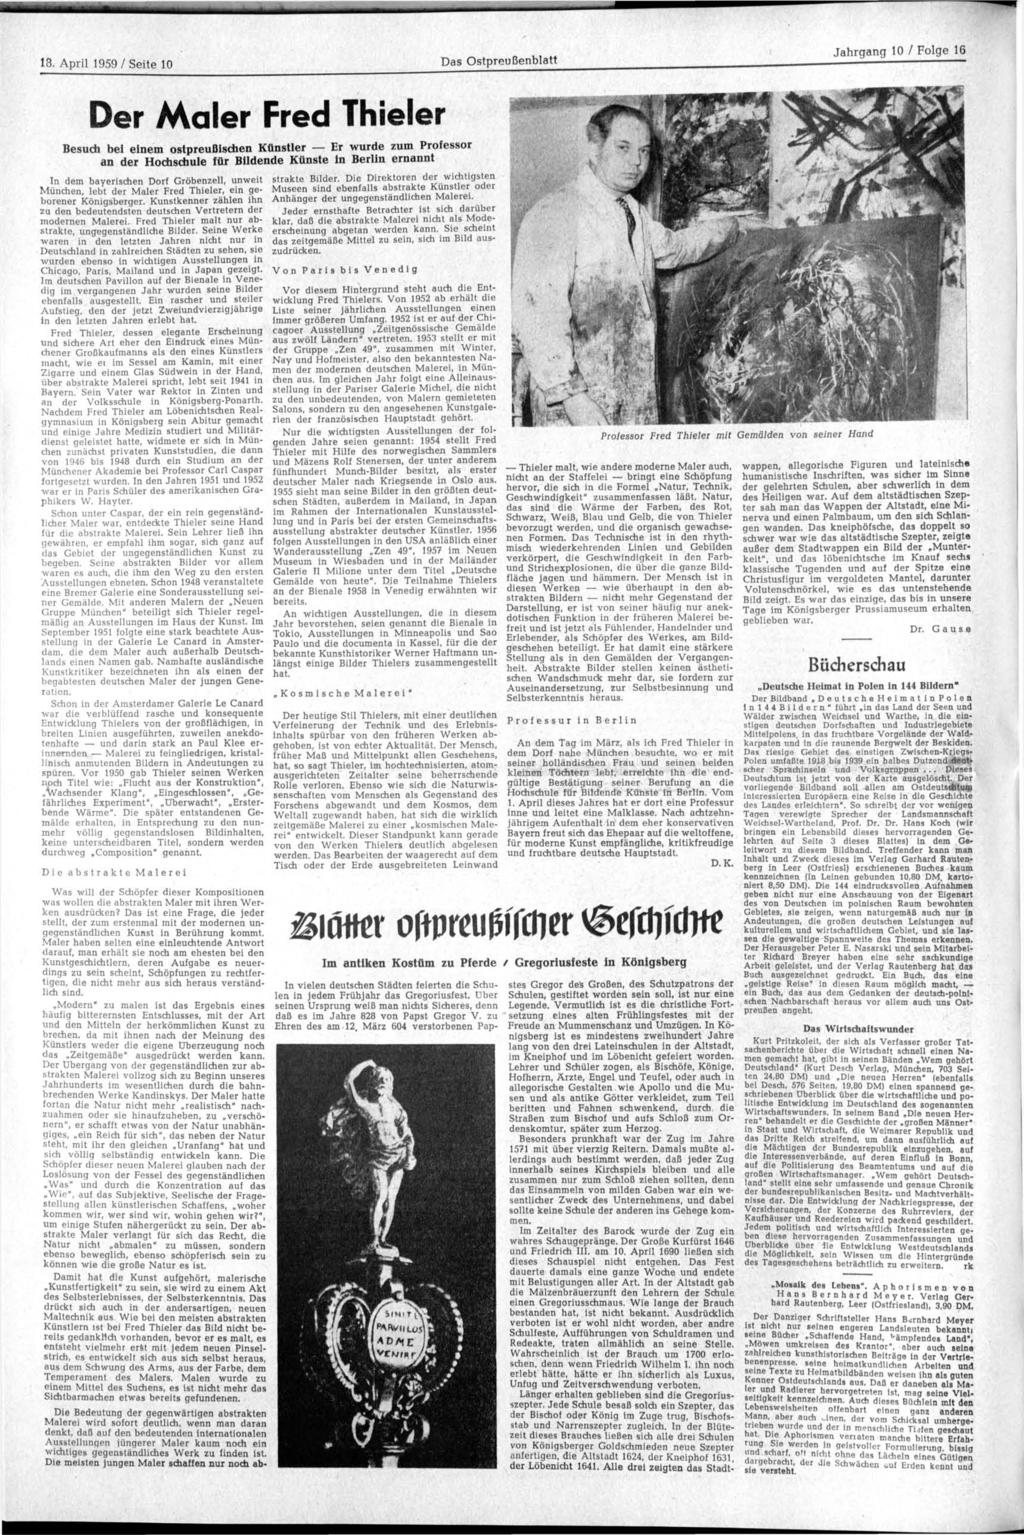 18. April 1959 / Seite 10 Das blatt Der Maler Fred Thieler Besuch bei einem ostpreußischen Künstler Er wurde zum Professor an der Hochschule für Bildende Künste in Berlin ernannt In dem bayerischen